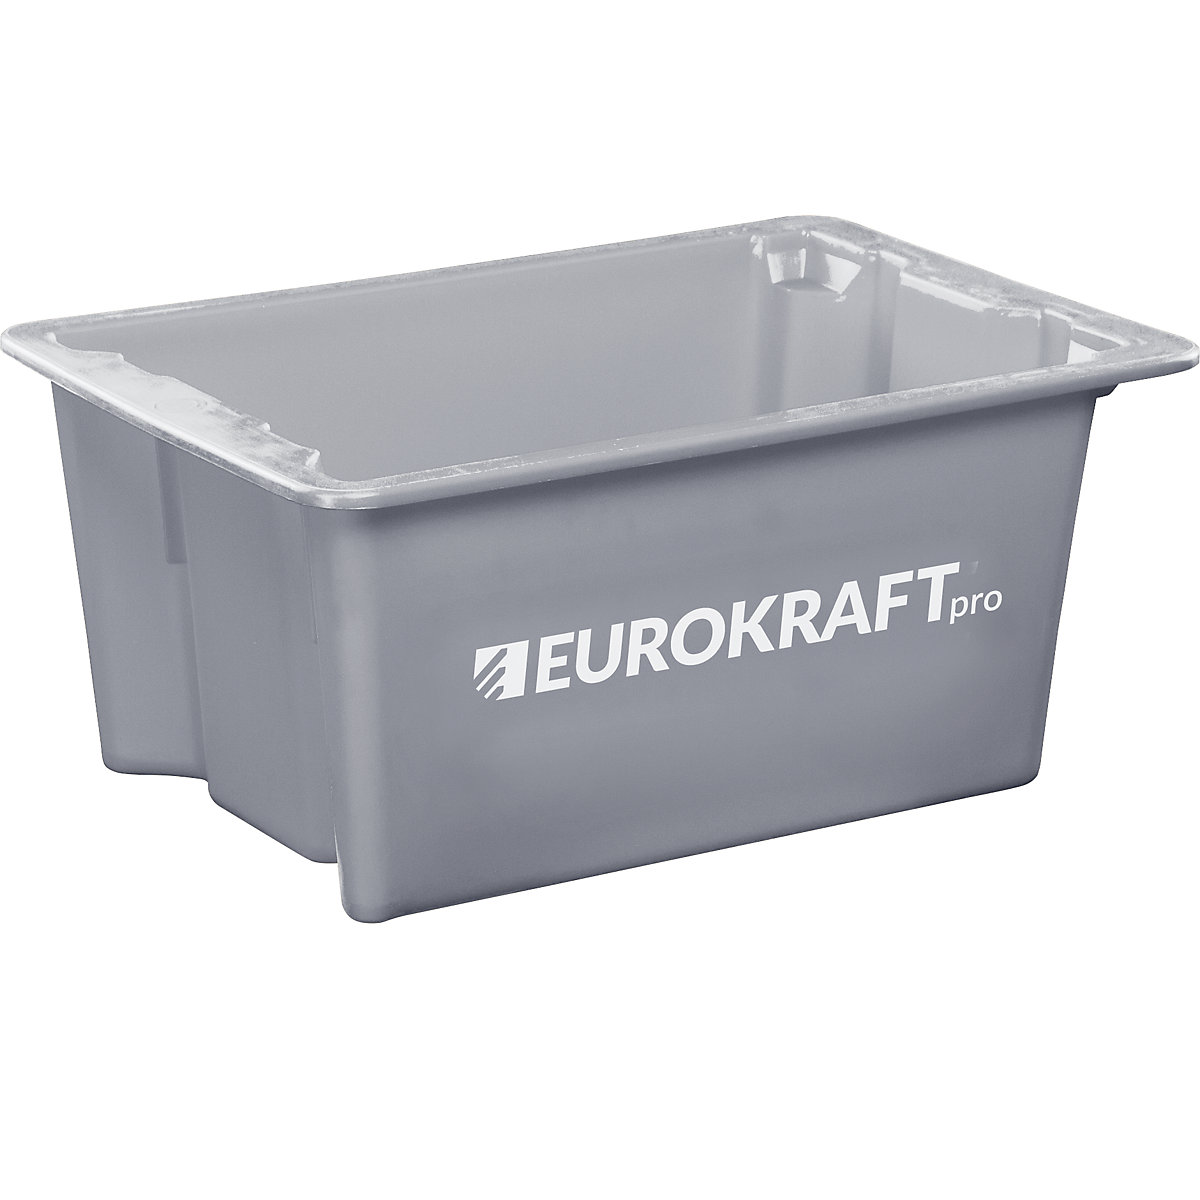 EUROKRAFTpro – Otočná stohovací nádoba z polypropylenu vhodného pro potraviny